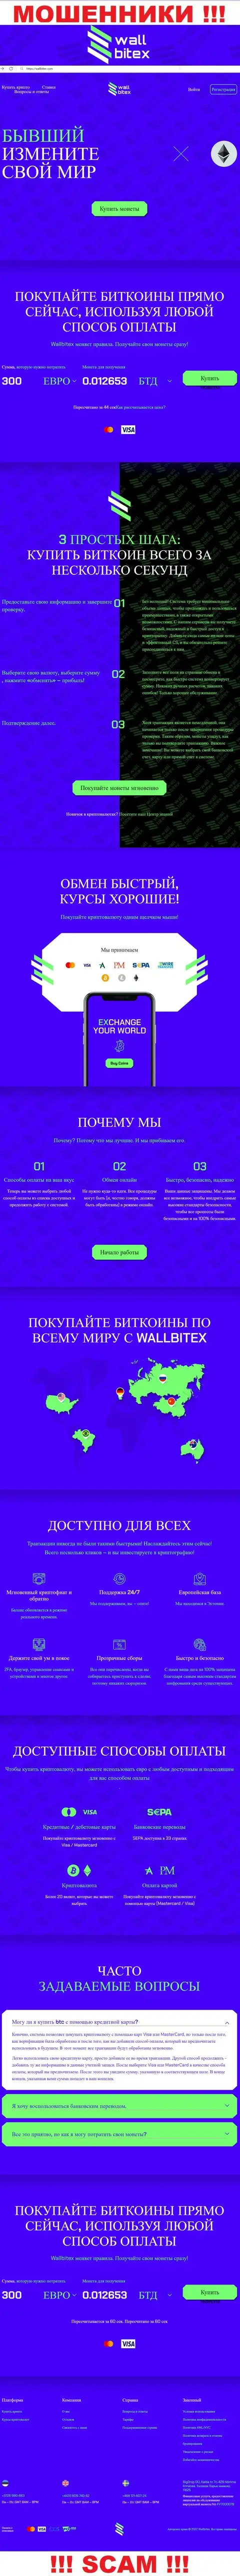 WallBitex Com - это web-портал преступно действующей организации Валл Битекс